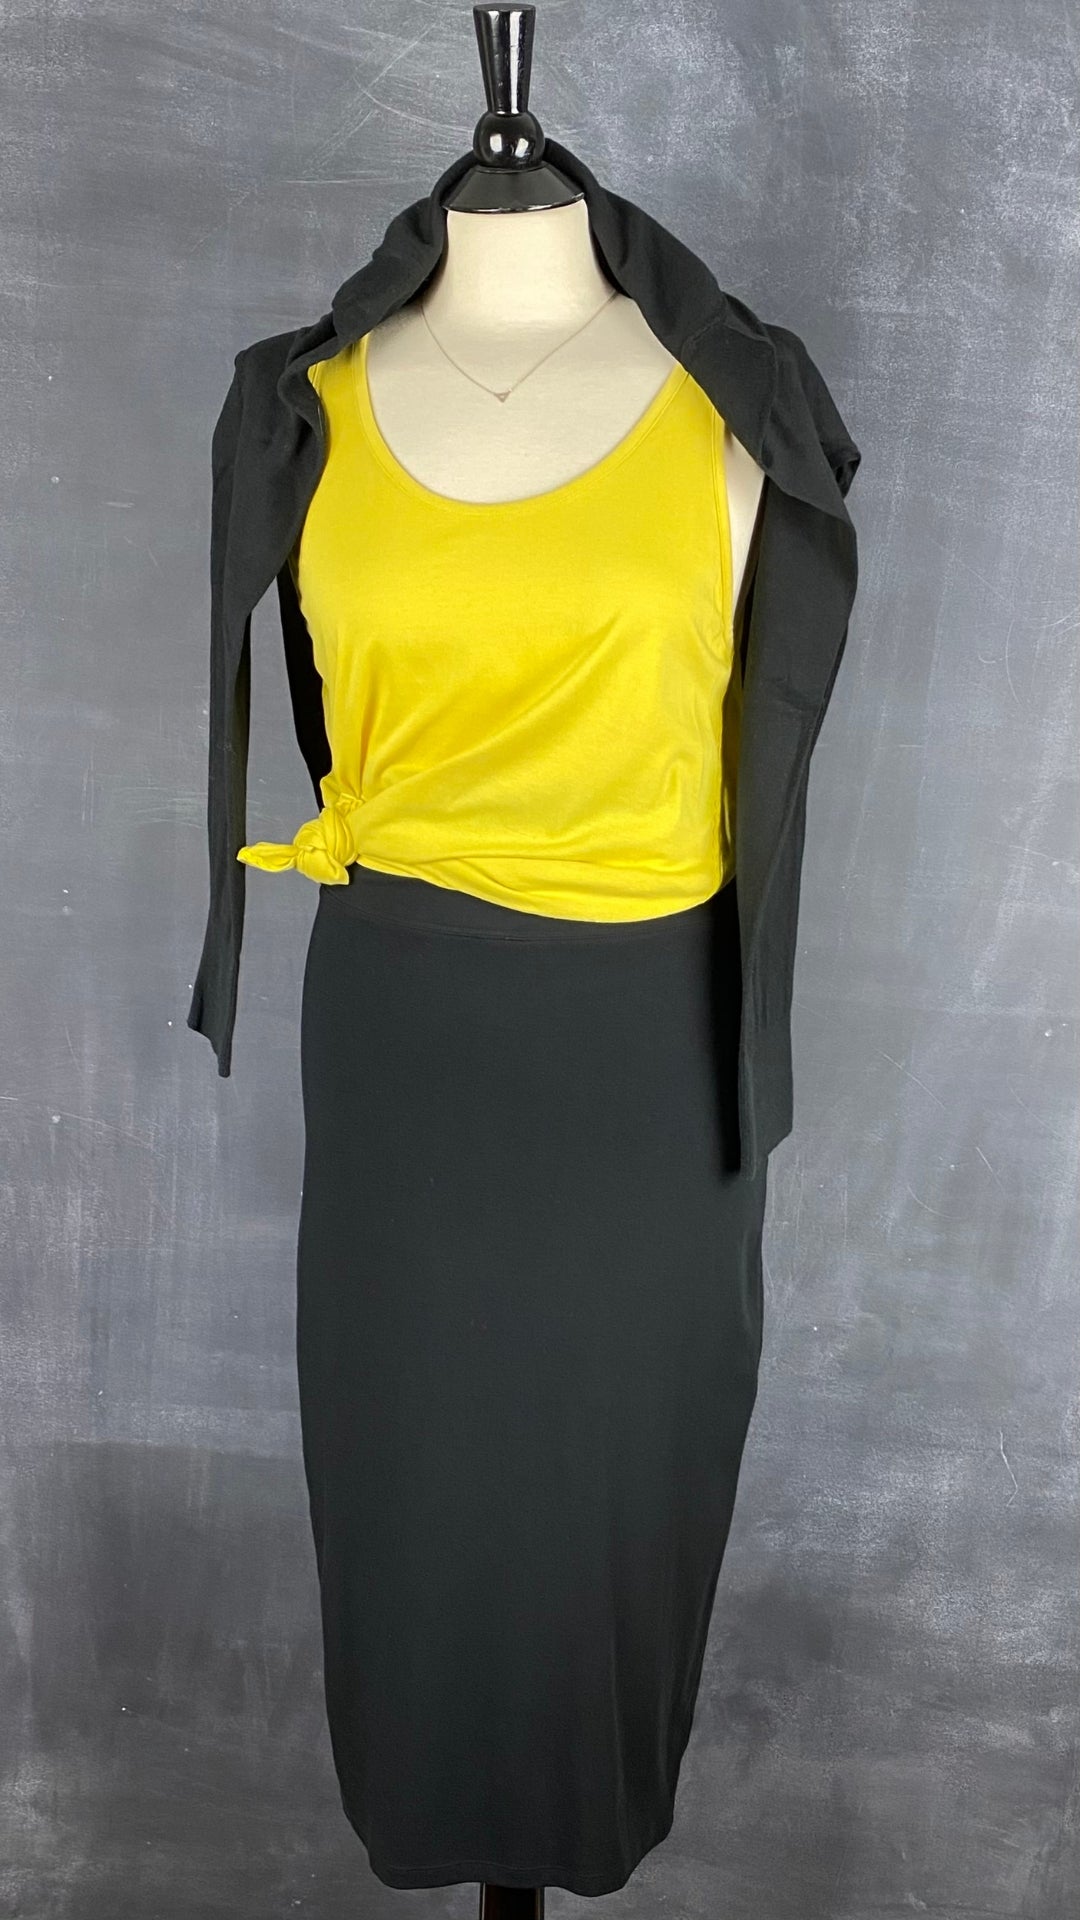 Jupe midi noire extensible Babaton, taille medium (small). Vue de l'agencement avec une camisole jaune et un cardigan noir.